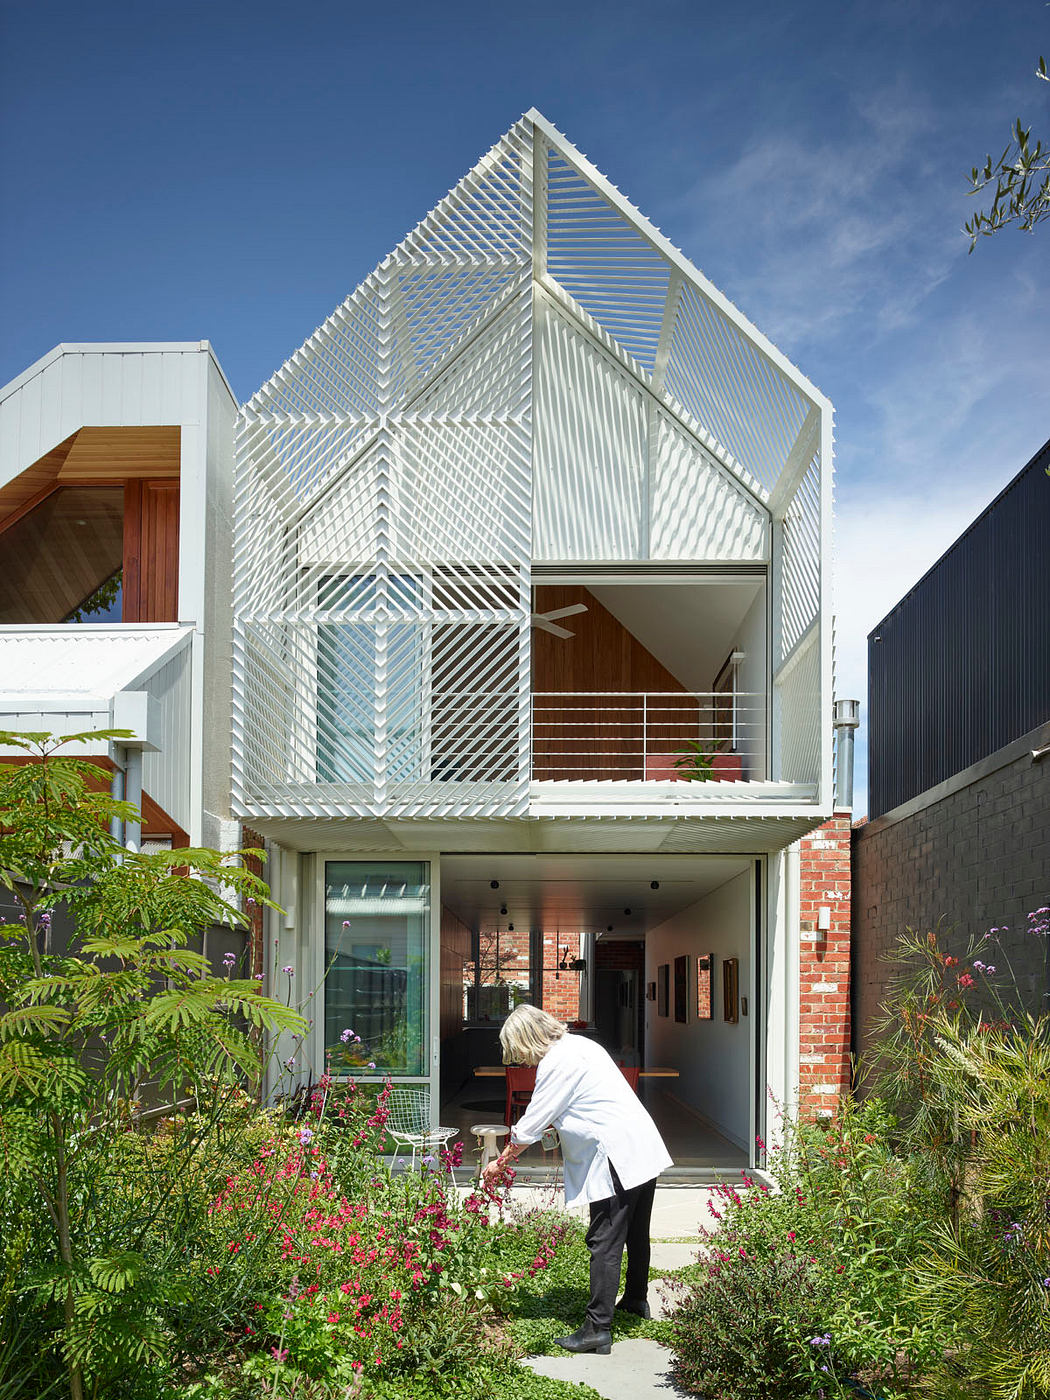 Contemporary house with a geometric facade and lush garden.